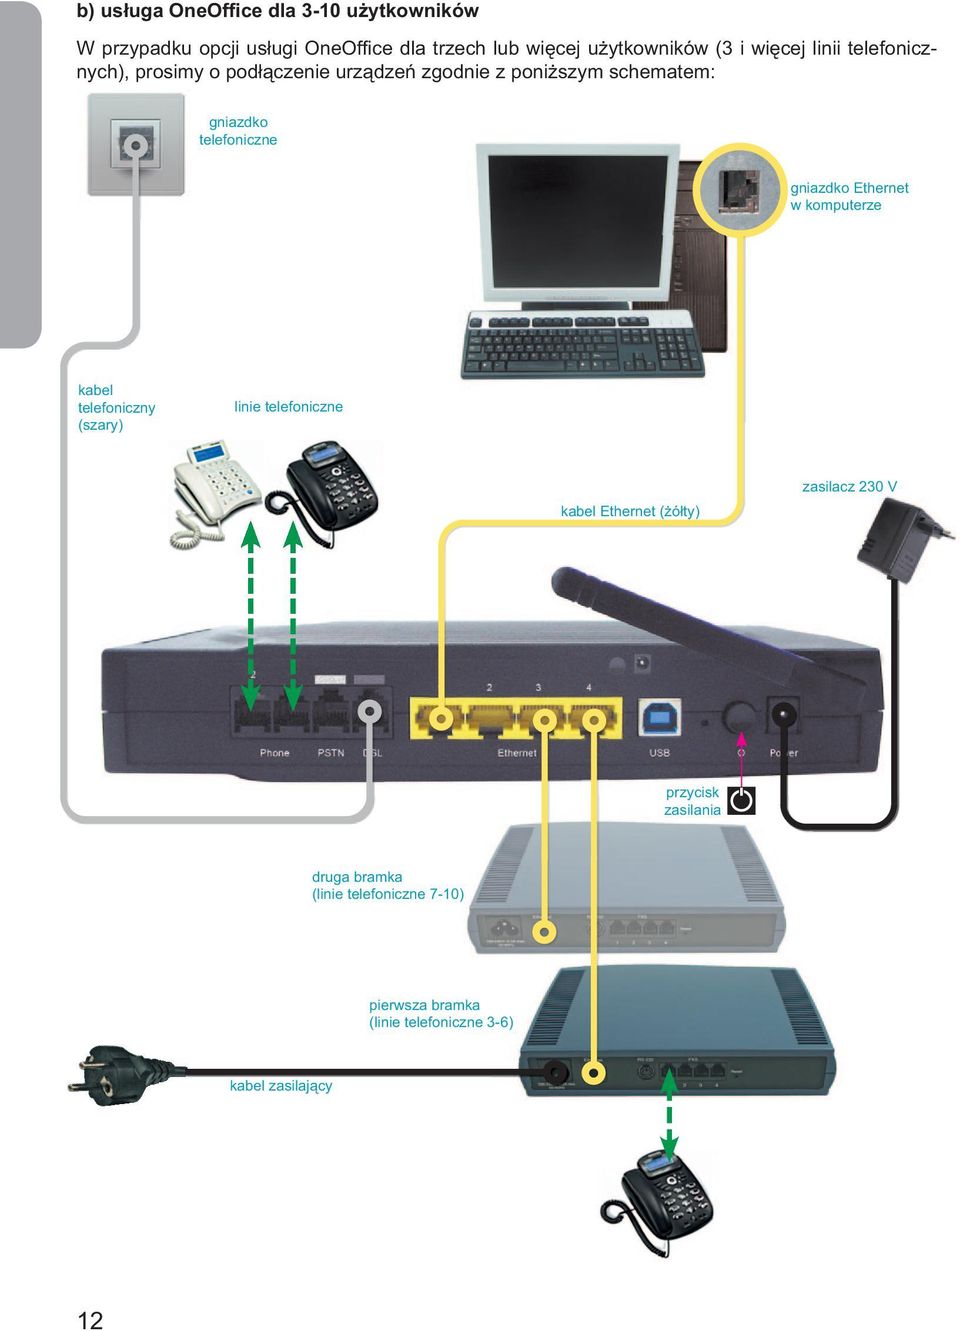 gniazdko Ethernet w komputerze kabel telefoniczny (szary) linie telefoniczne kabel Ethernet (żółty) zasilacz 230 V